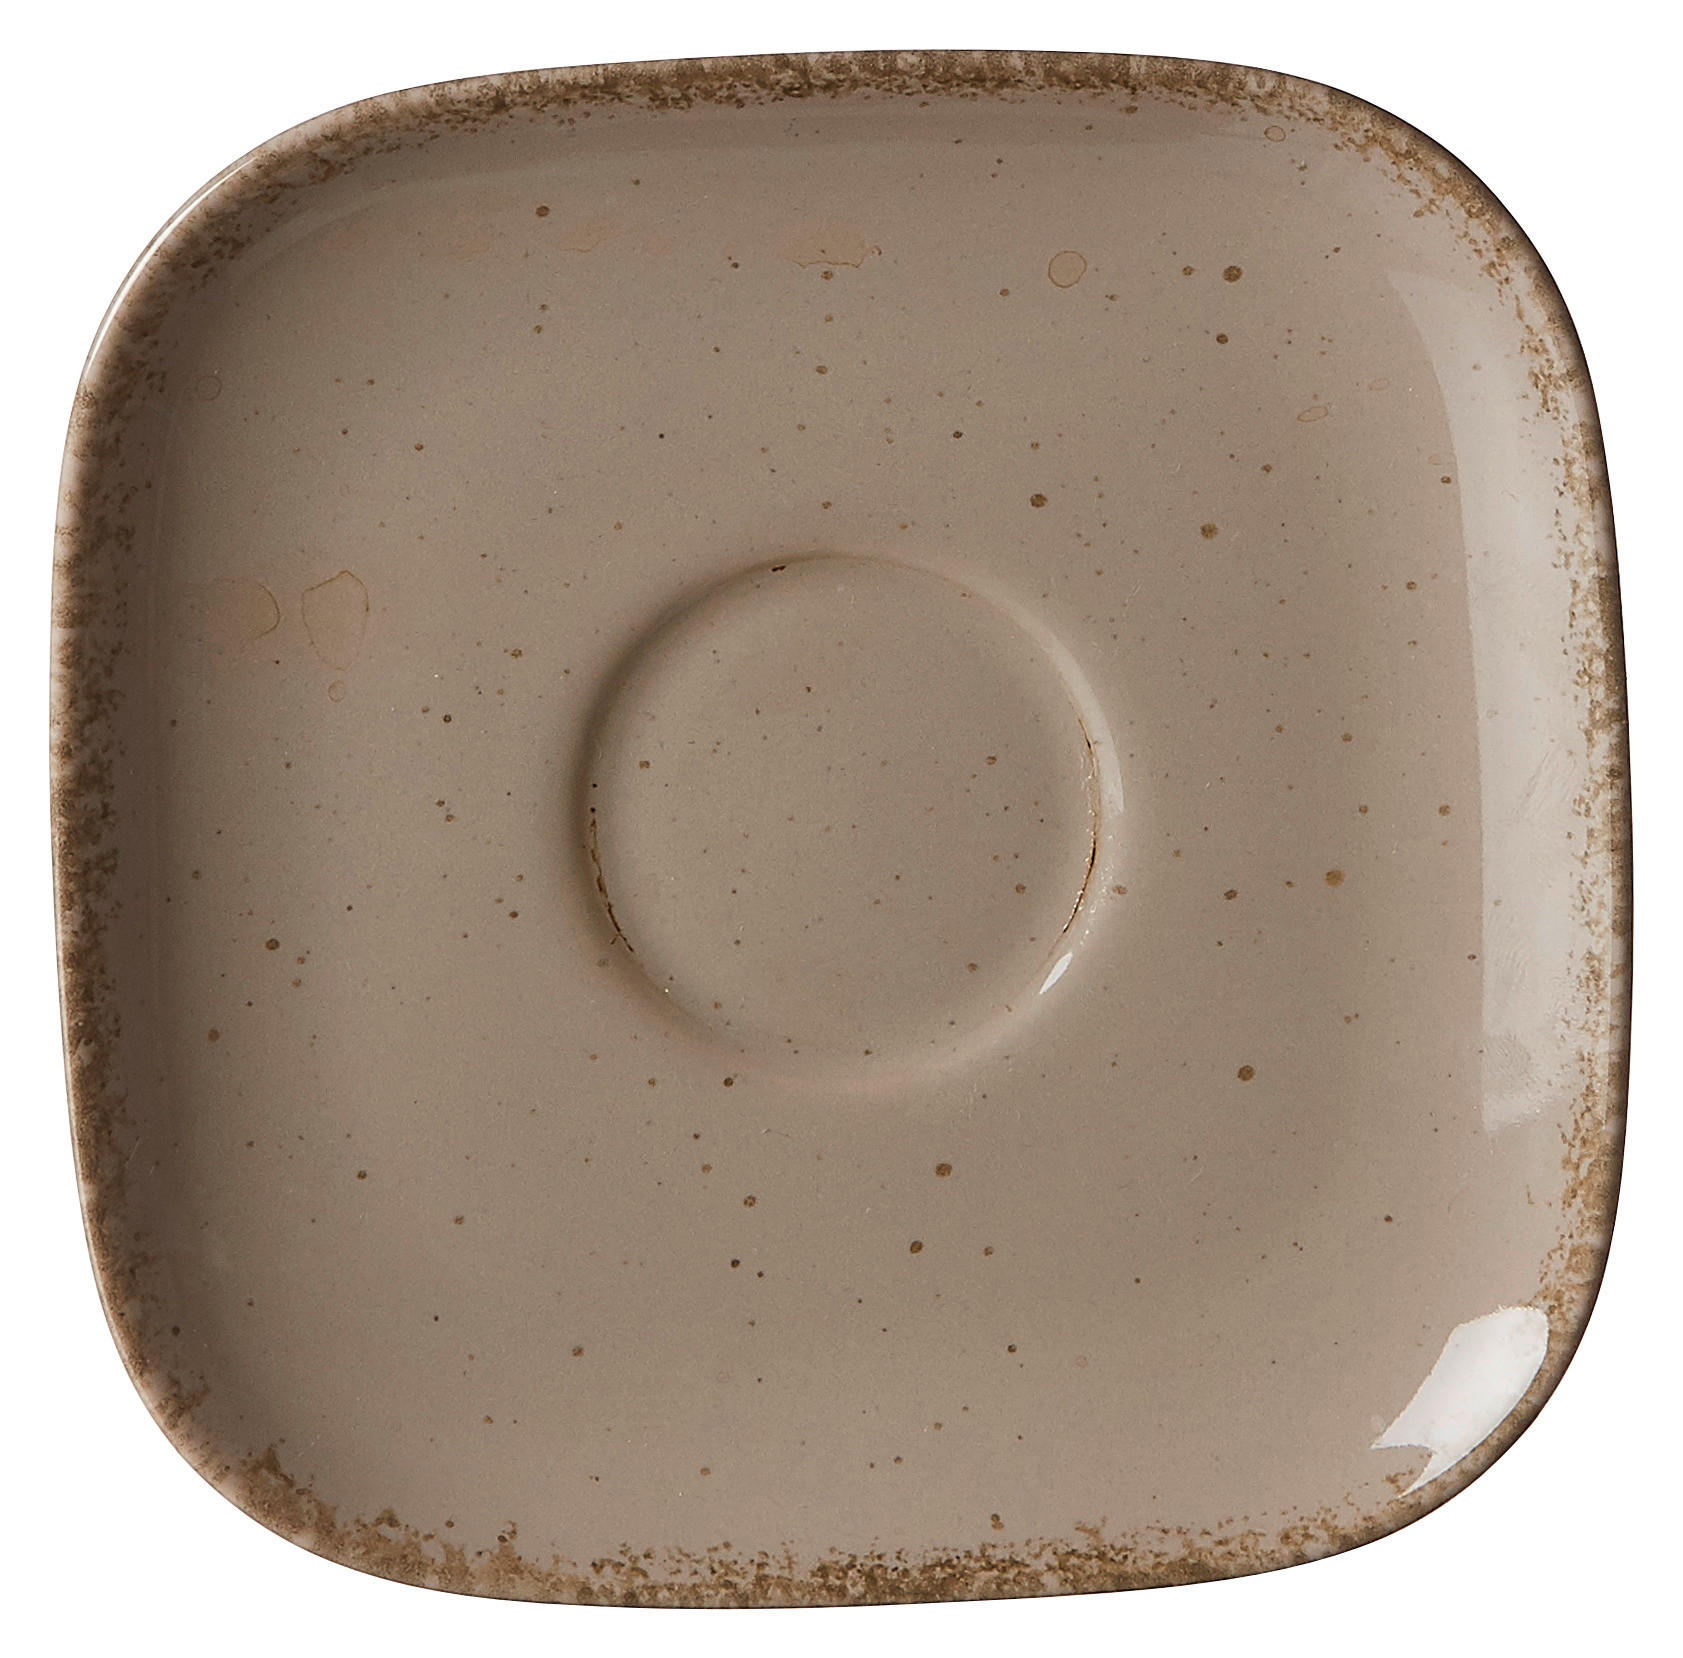 UNTERTASSE - Grau, LIFESTYLE, Keramik (14/14/2cm) - Ritzenhoff Breker